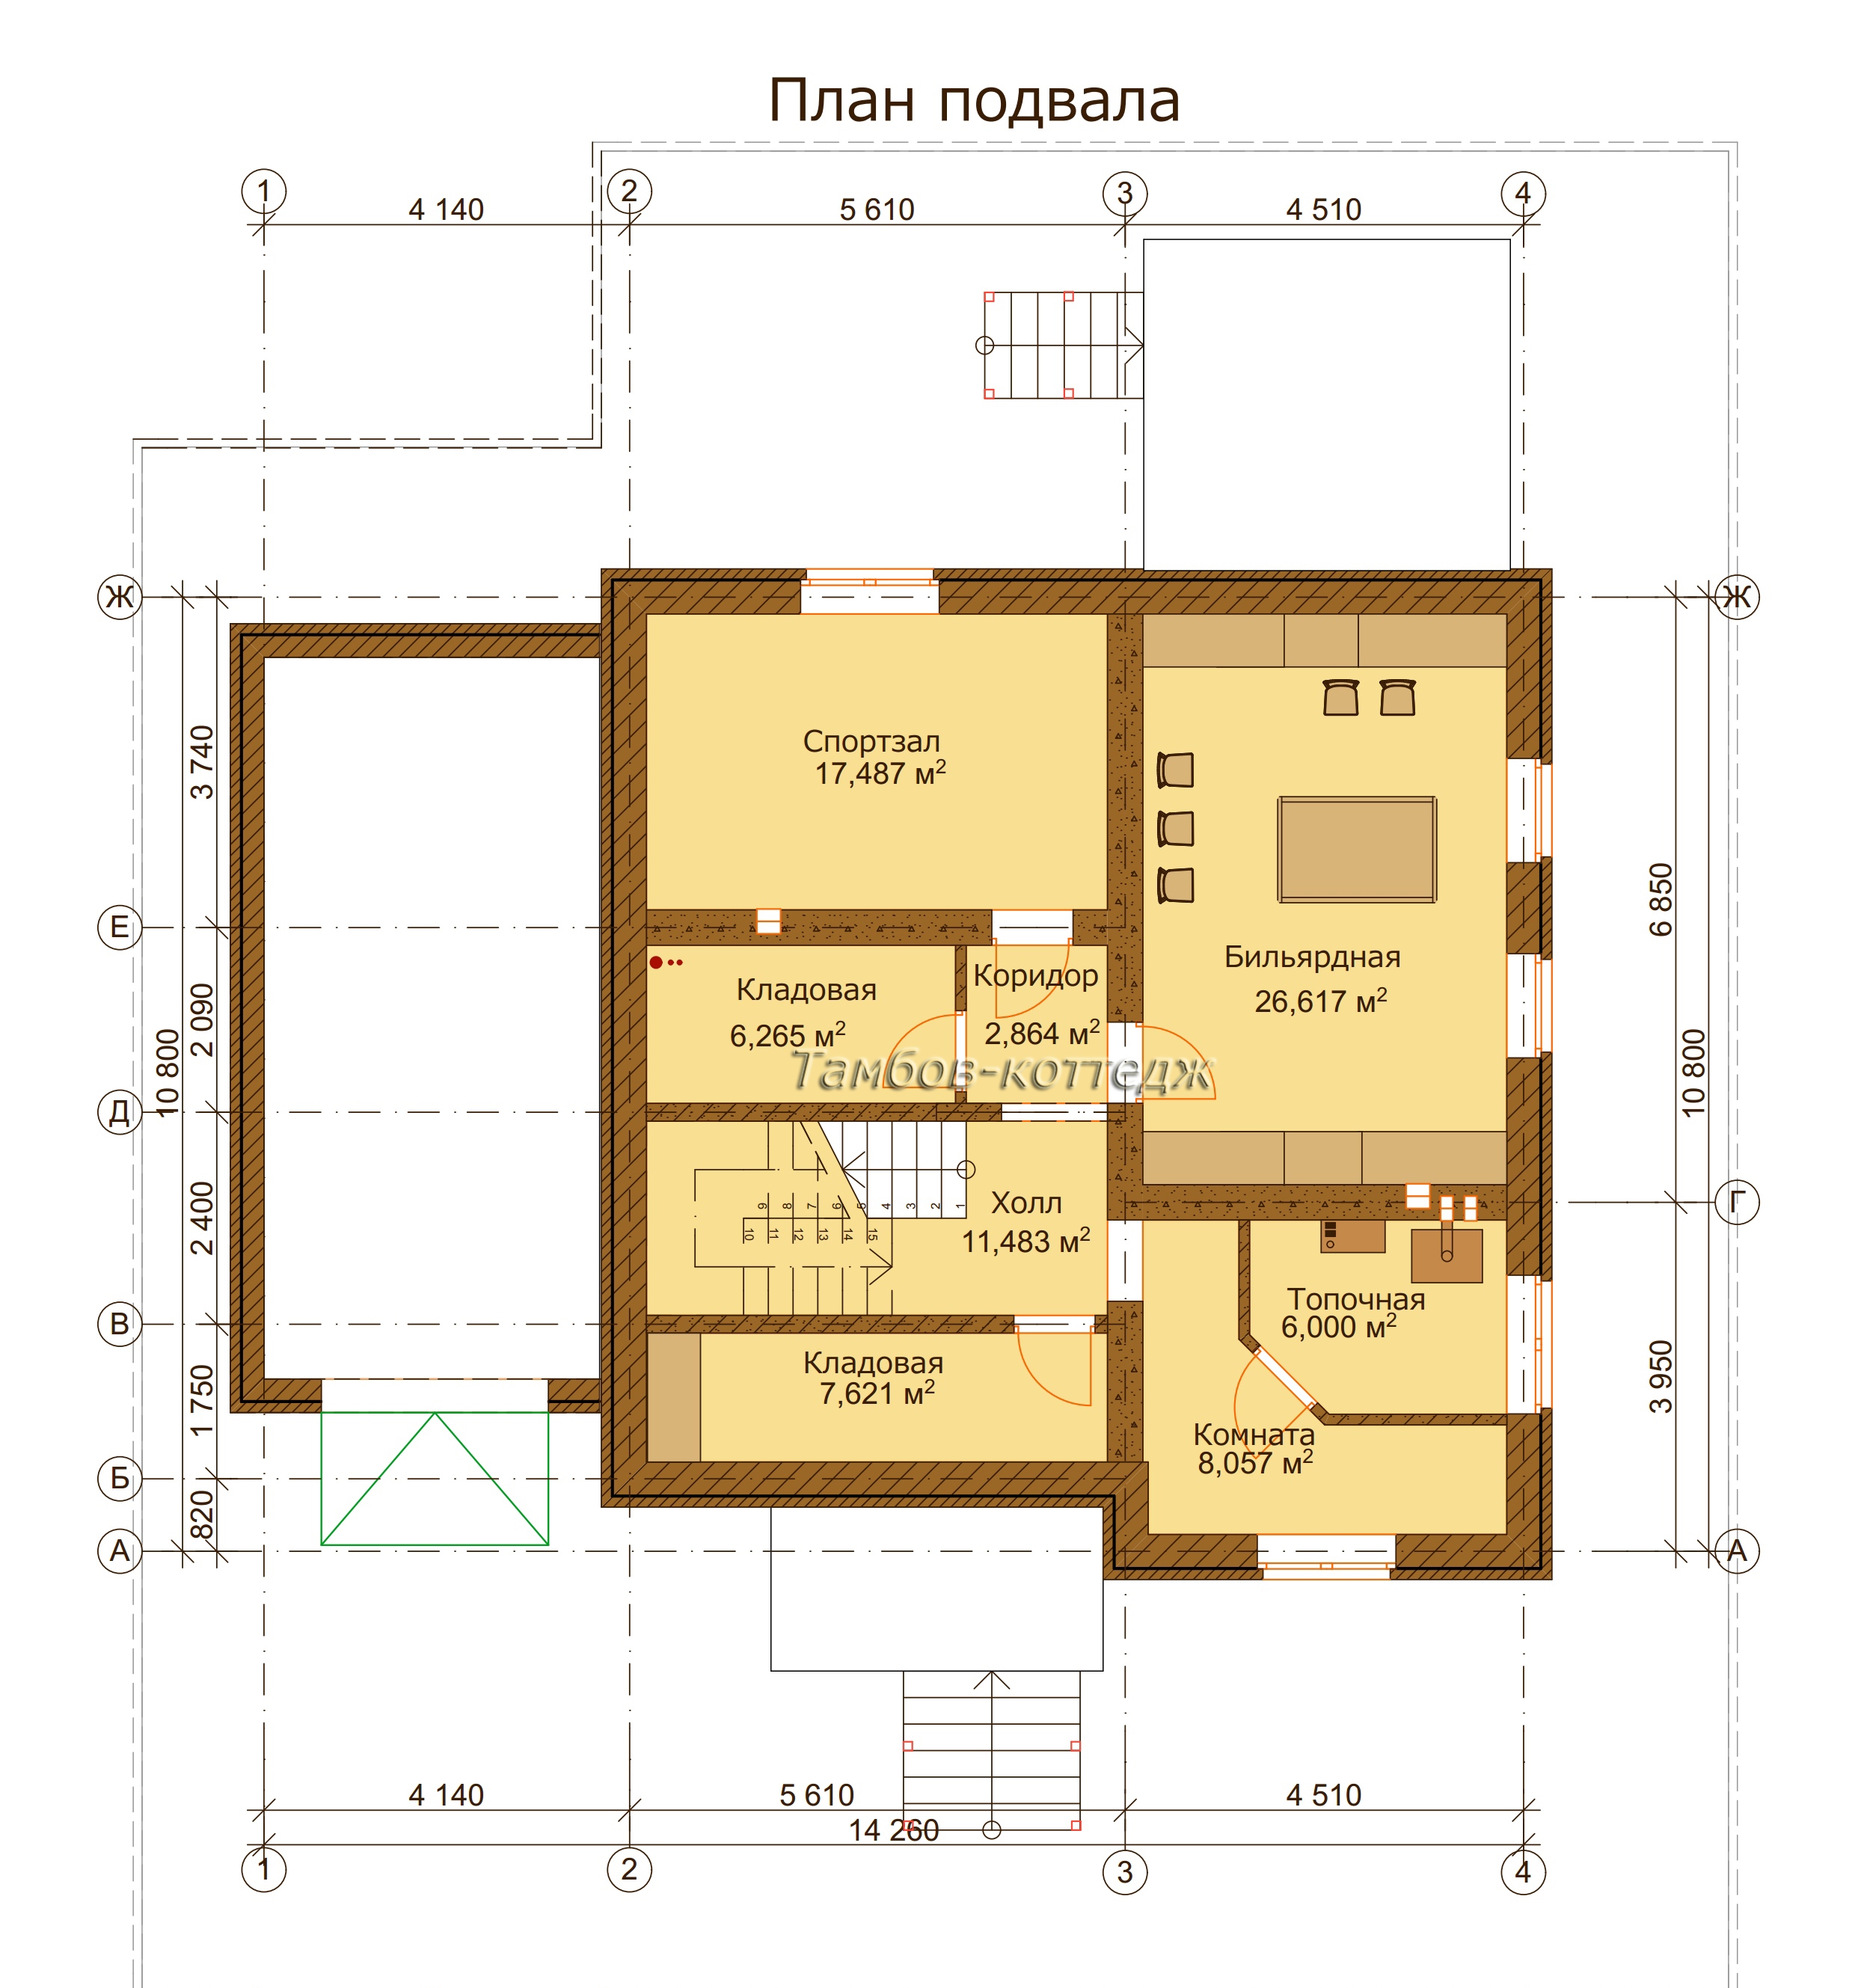 План подвала (двухэтажный жилой дом площадью 299 м2)